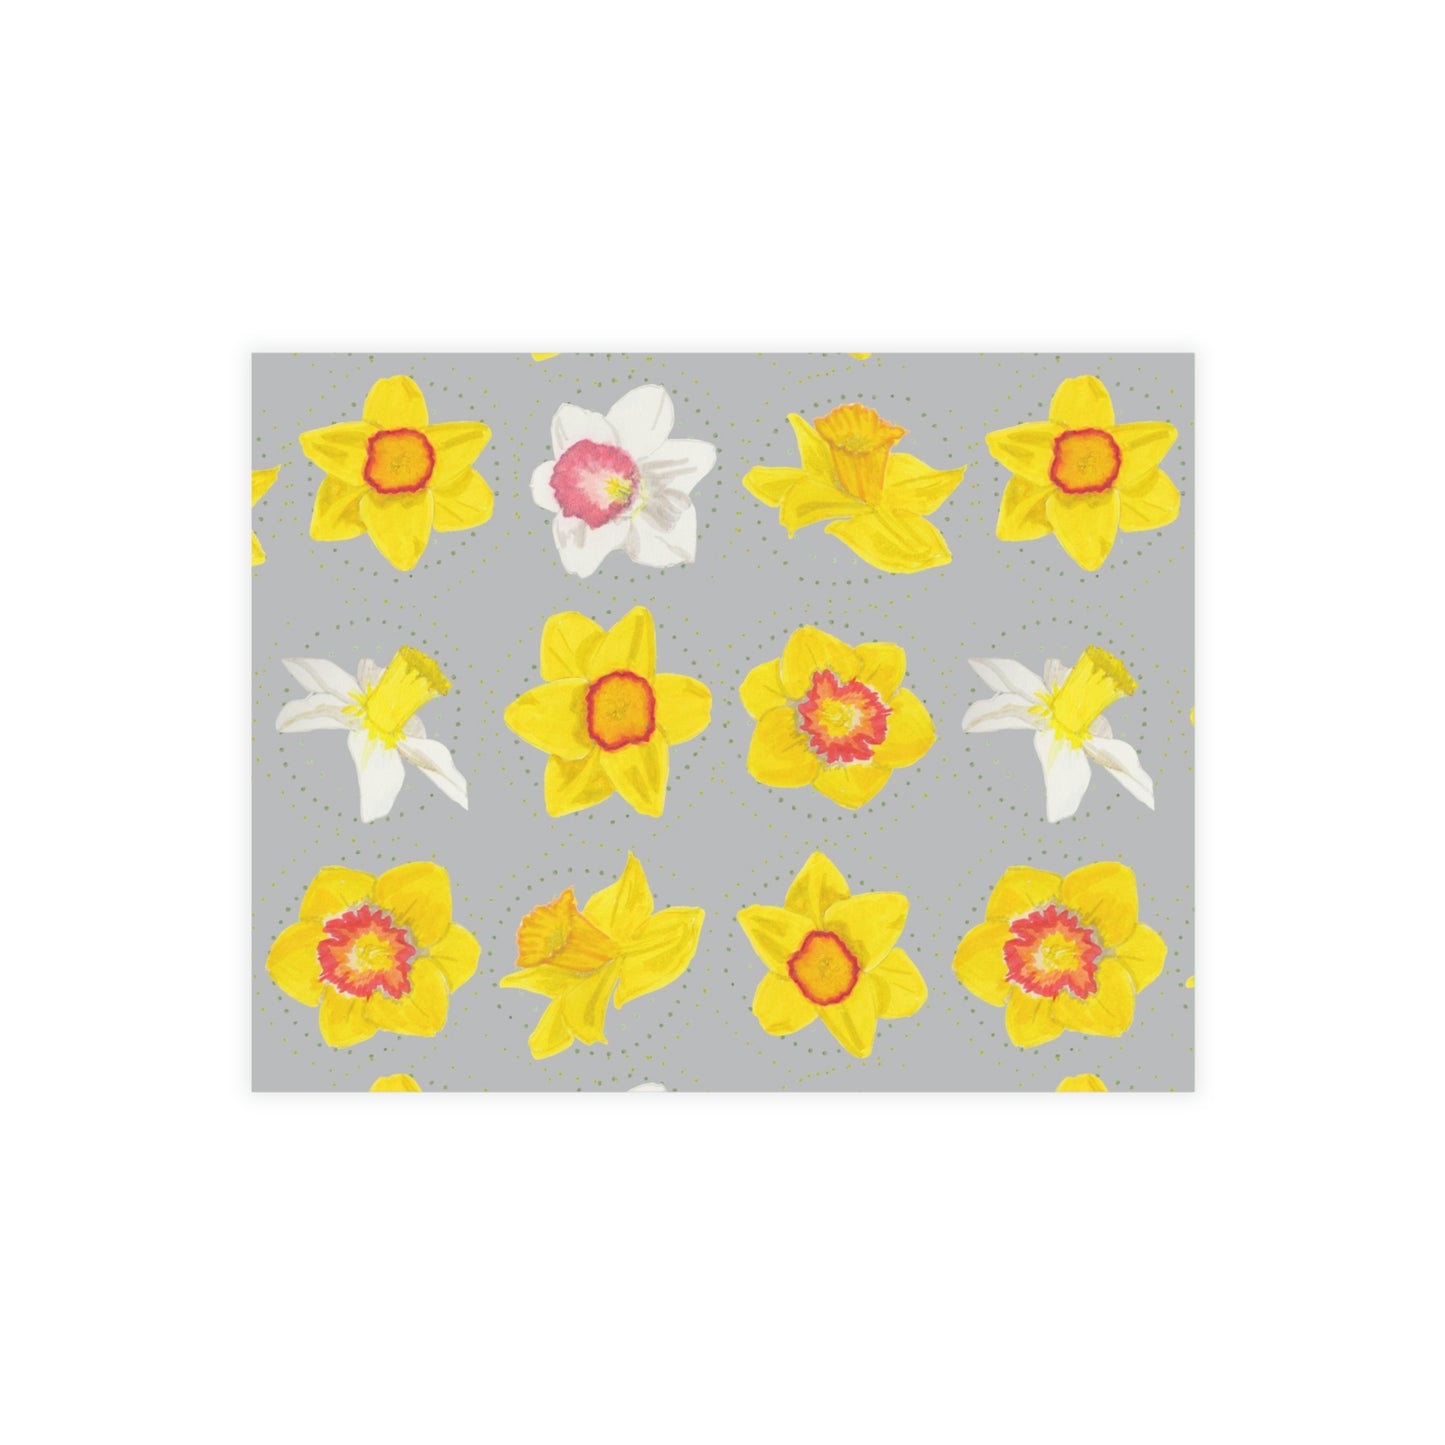 Daffodil Festival Greeting Card Bundle - Daffodils on Grey